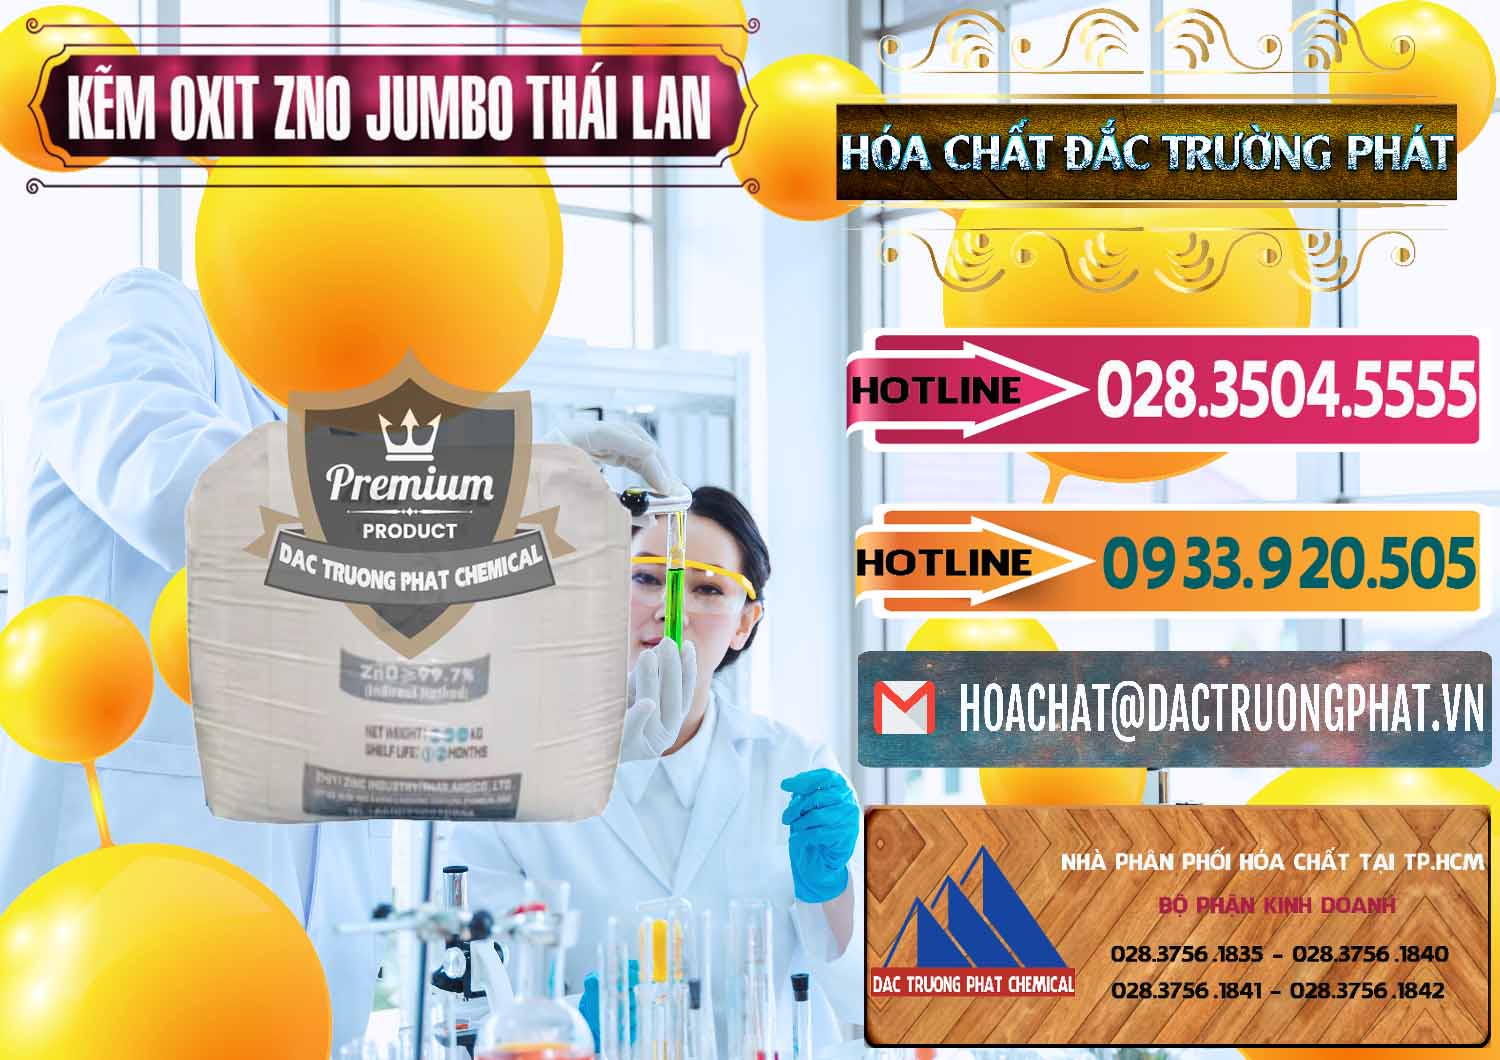 Đơn vị bán ( cung ứng ) Zinc Oxide - Bột Kẽm Oxit ZNO Jumbo Bành Thái Lan Thailand - 0370 - Đơn vị cung cấp ( kinh doanh ) hóa chất tại TP.HCM - dactruongphat.vn